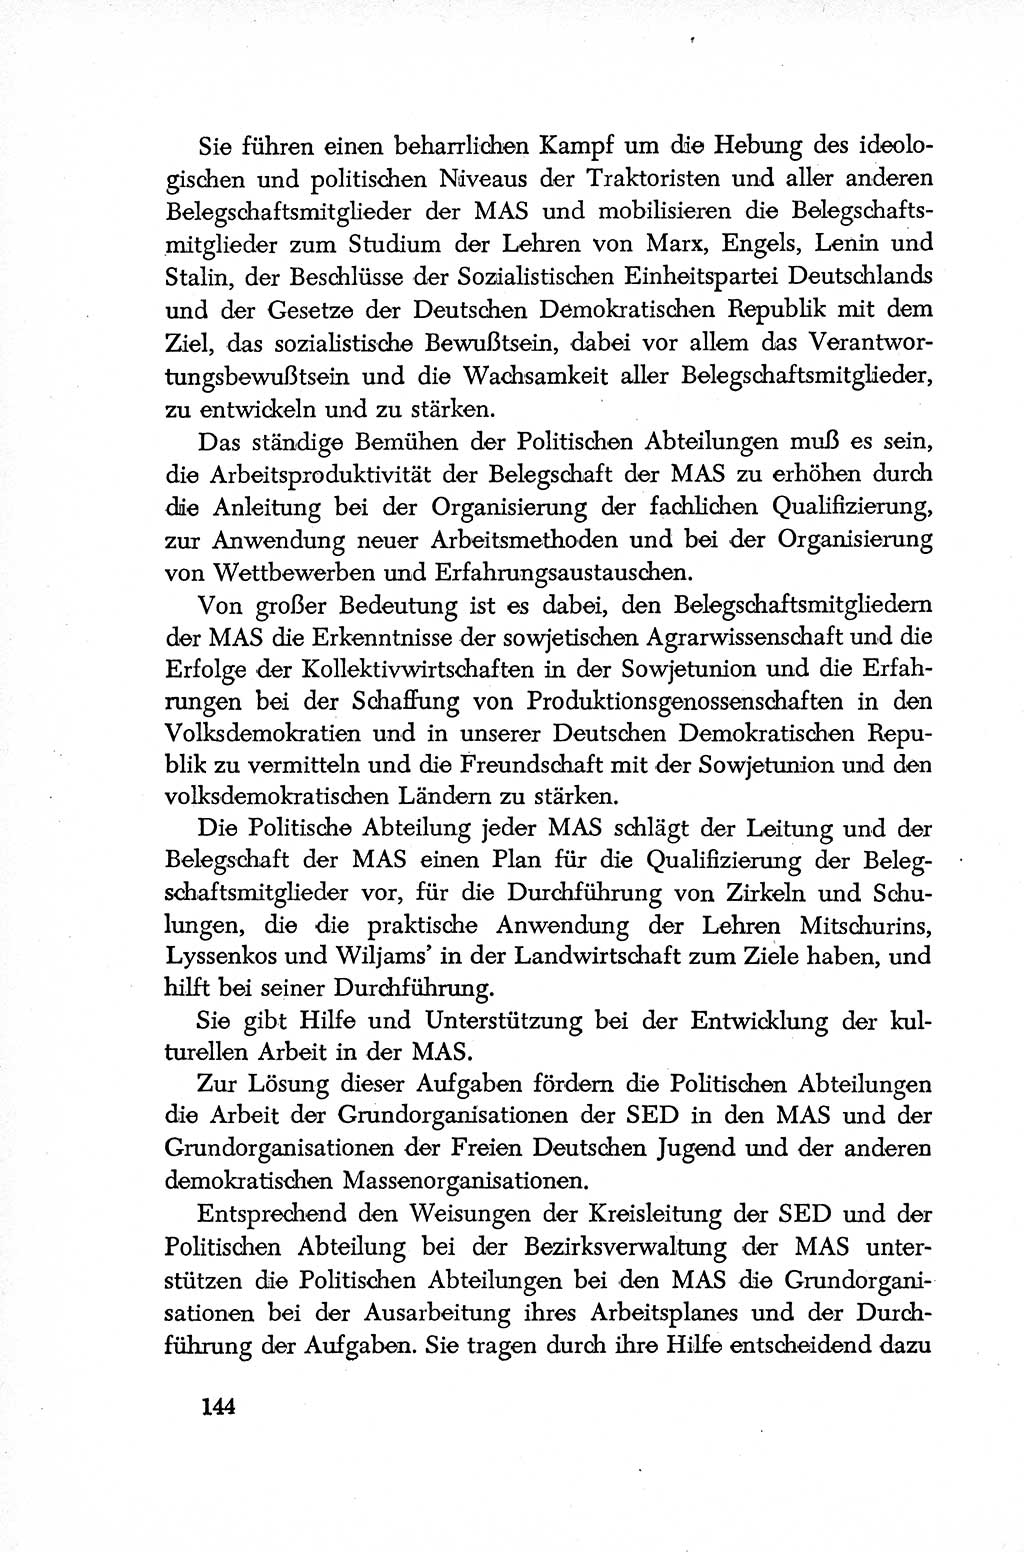 Dokumente der Sozialistischen Einheitspartei Deutschlands (SED) [Deutsche Demokratische Republik (DDR)] 1952-1953, Seite 144 (Dok. SED DDR 1952-1953, S. 144)